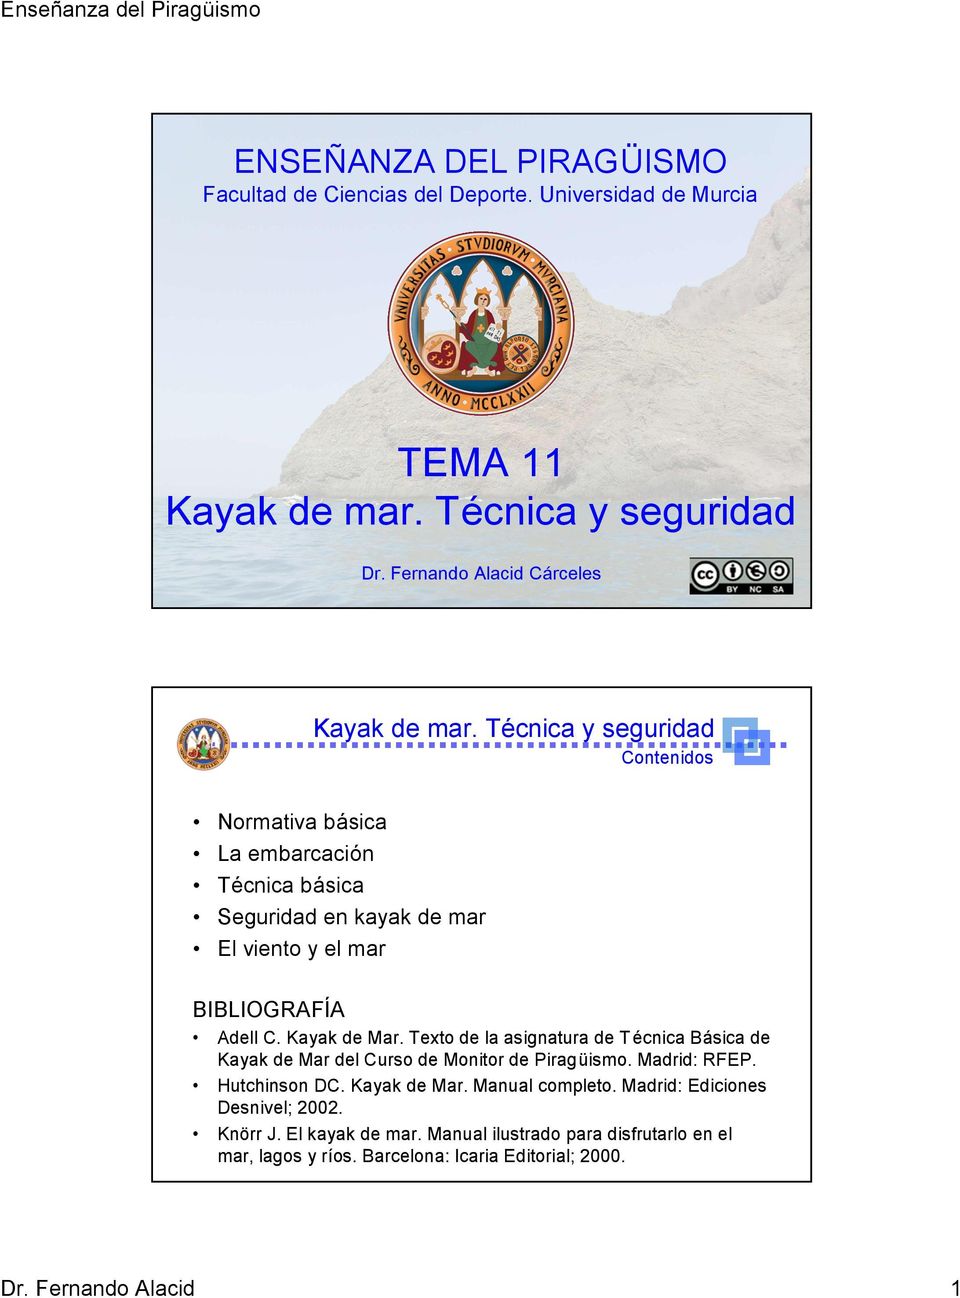 Texto de la asignatura de Técnica Básica de Kayak de Mar del Curso de Monitor de Piragüismo. Madrid: RFEP. Hutchinson DC. Kayak de Mar. Manual completo.